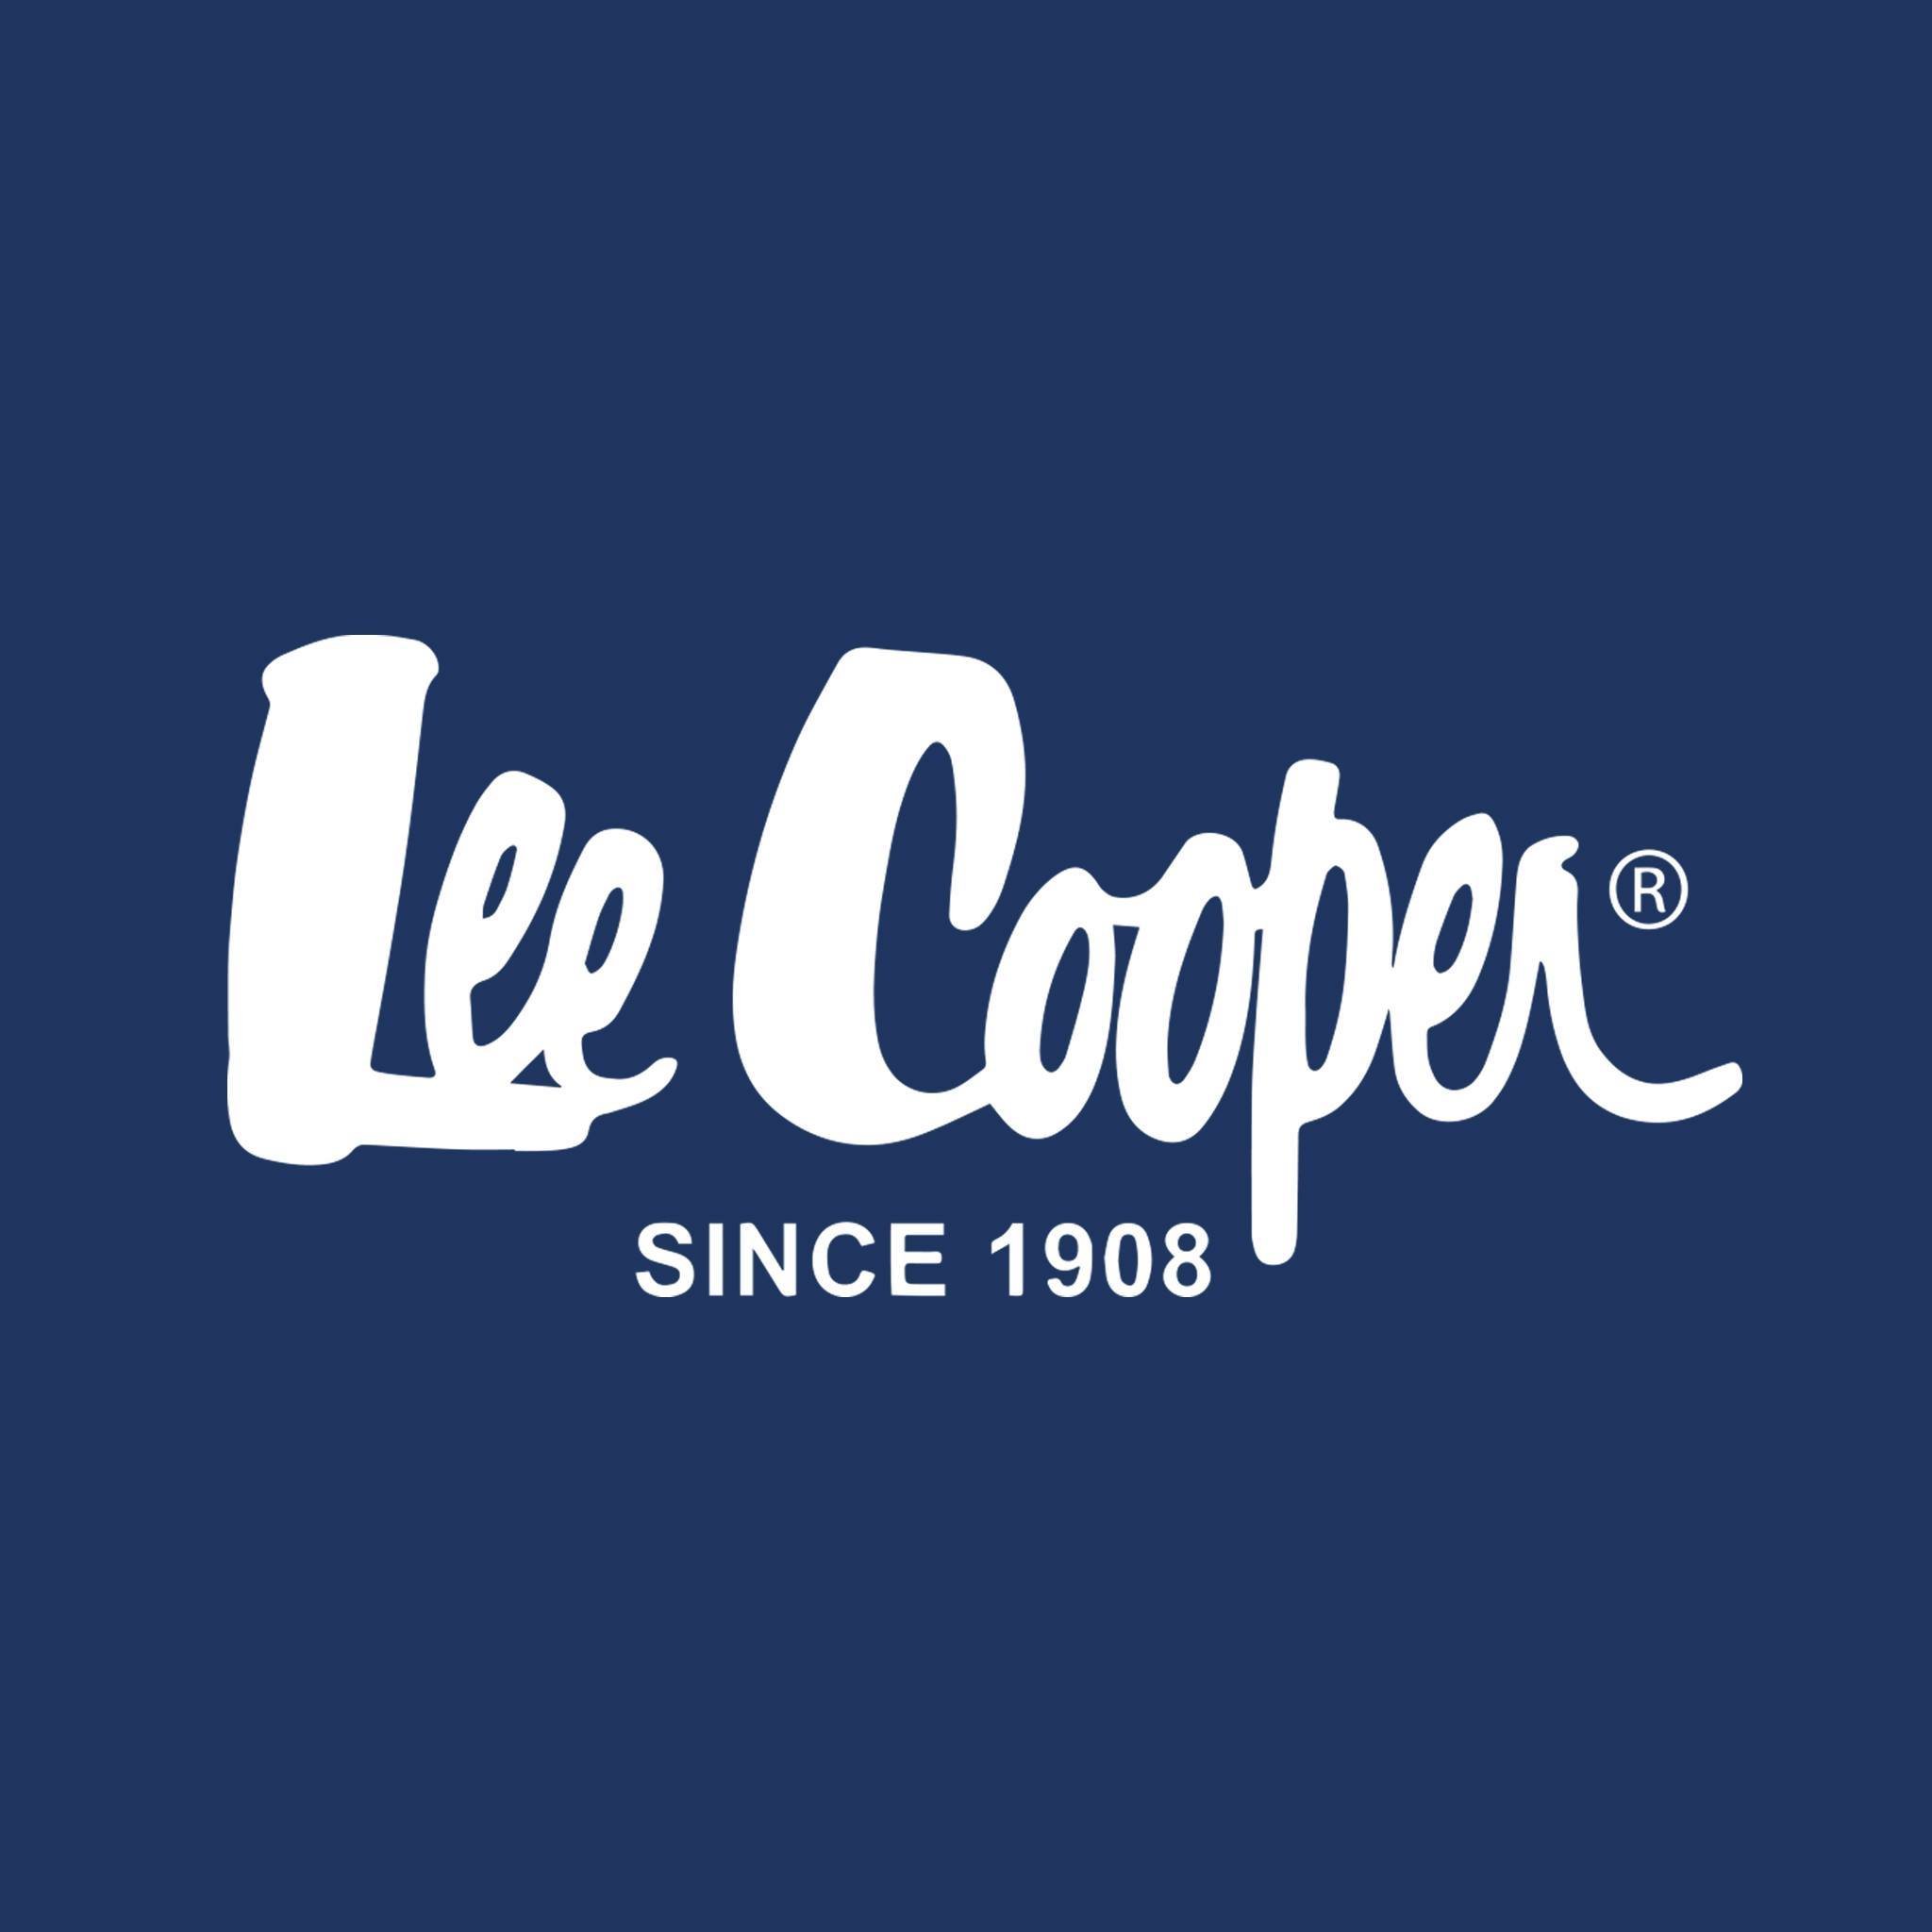 Lee Cooper | LookSize